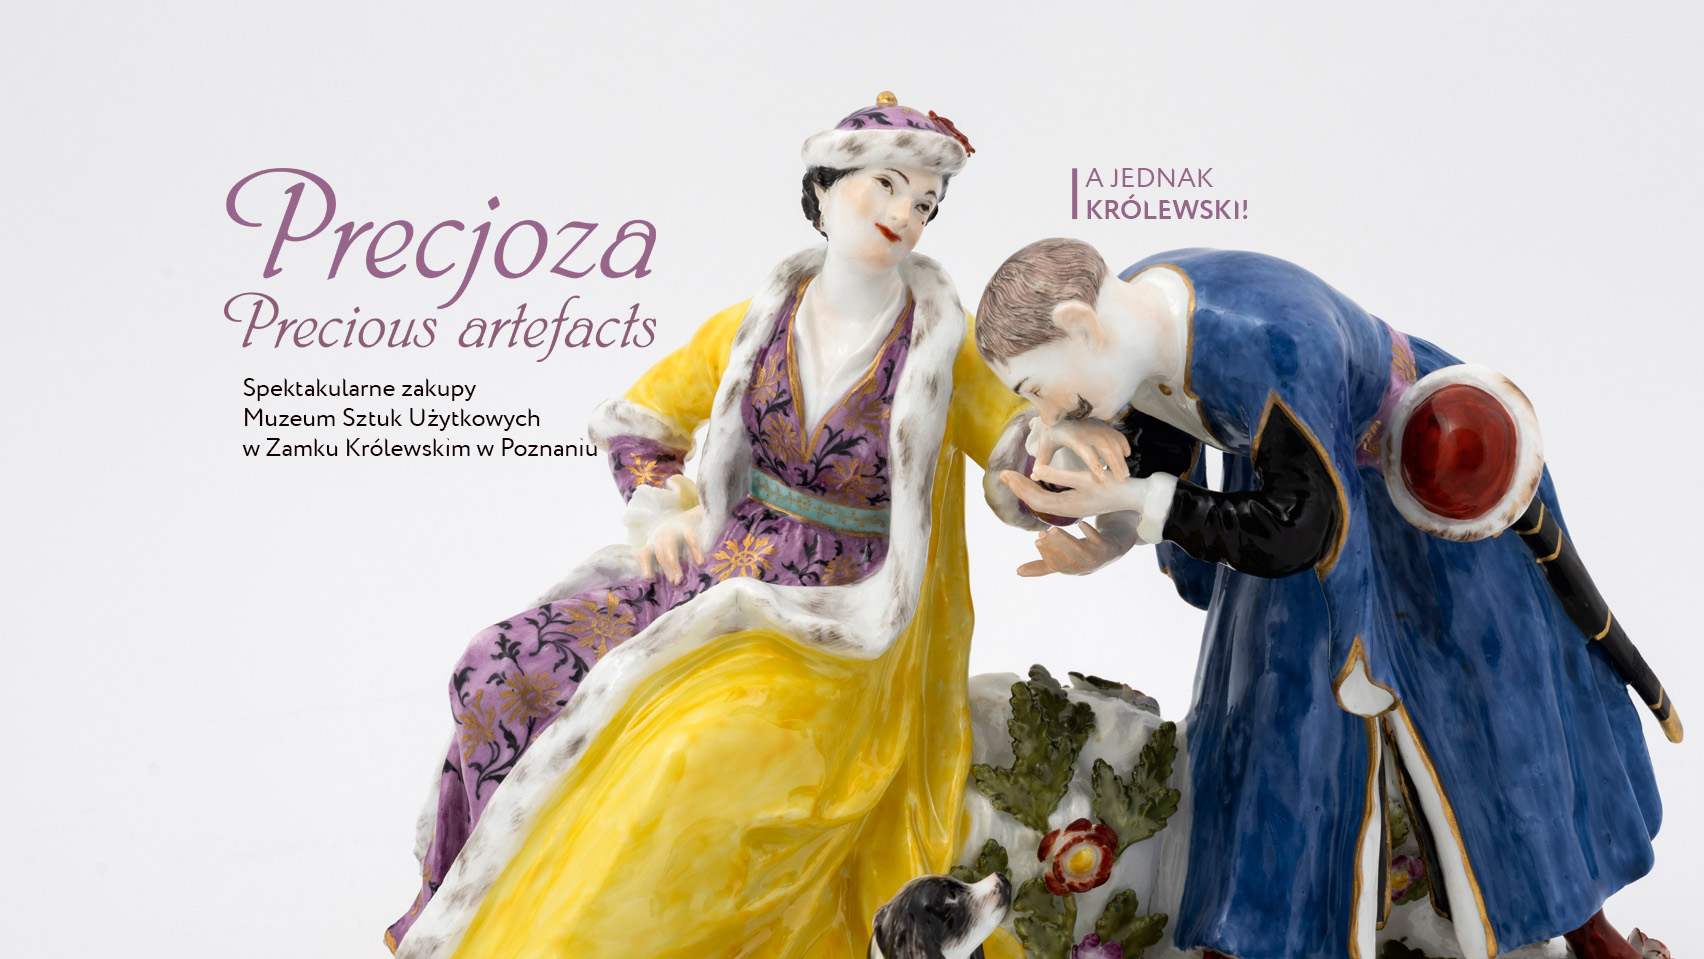 Zdjęcie figurki porcelanowej. Nad siedzącą kobietą pochyla się mężczyzna i całuje kobiecą dłoń. Po lewej napis : Precjoza. Spektakularne zakupy Muzeum Sztuk Użytkowych na Zamku Królewskim w Poznaniu